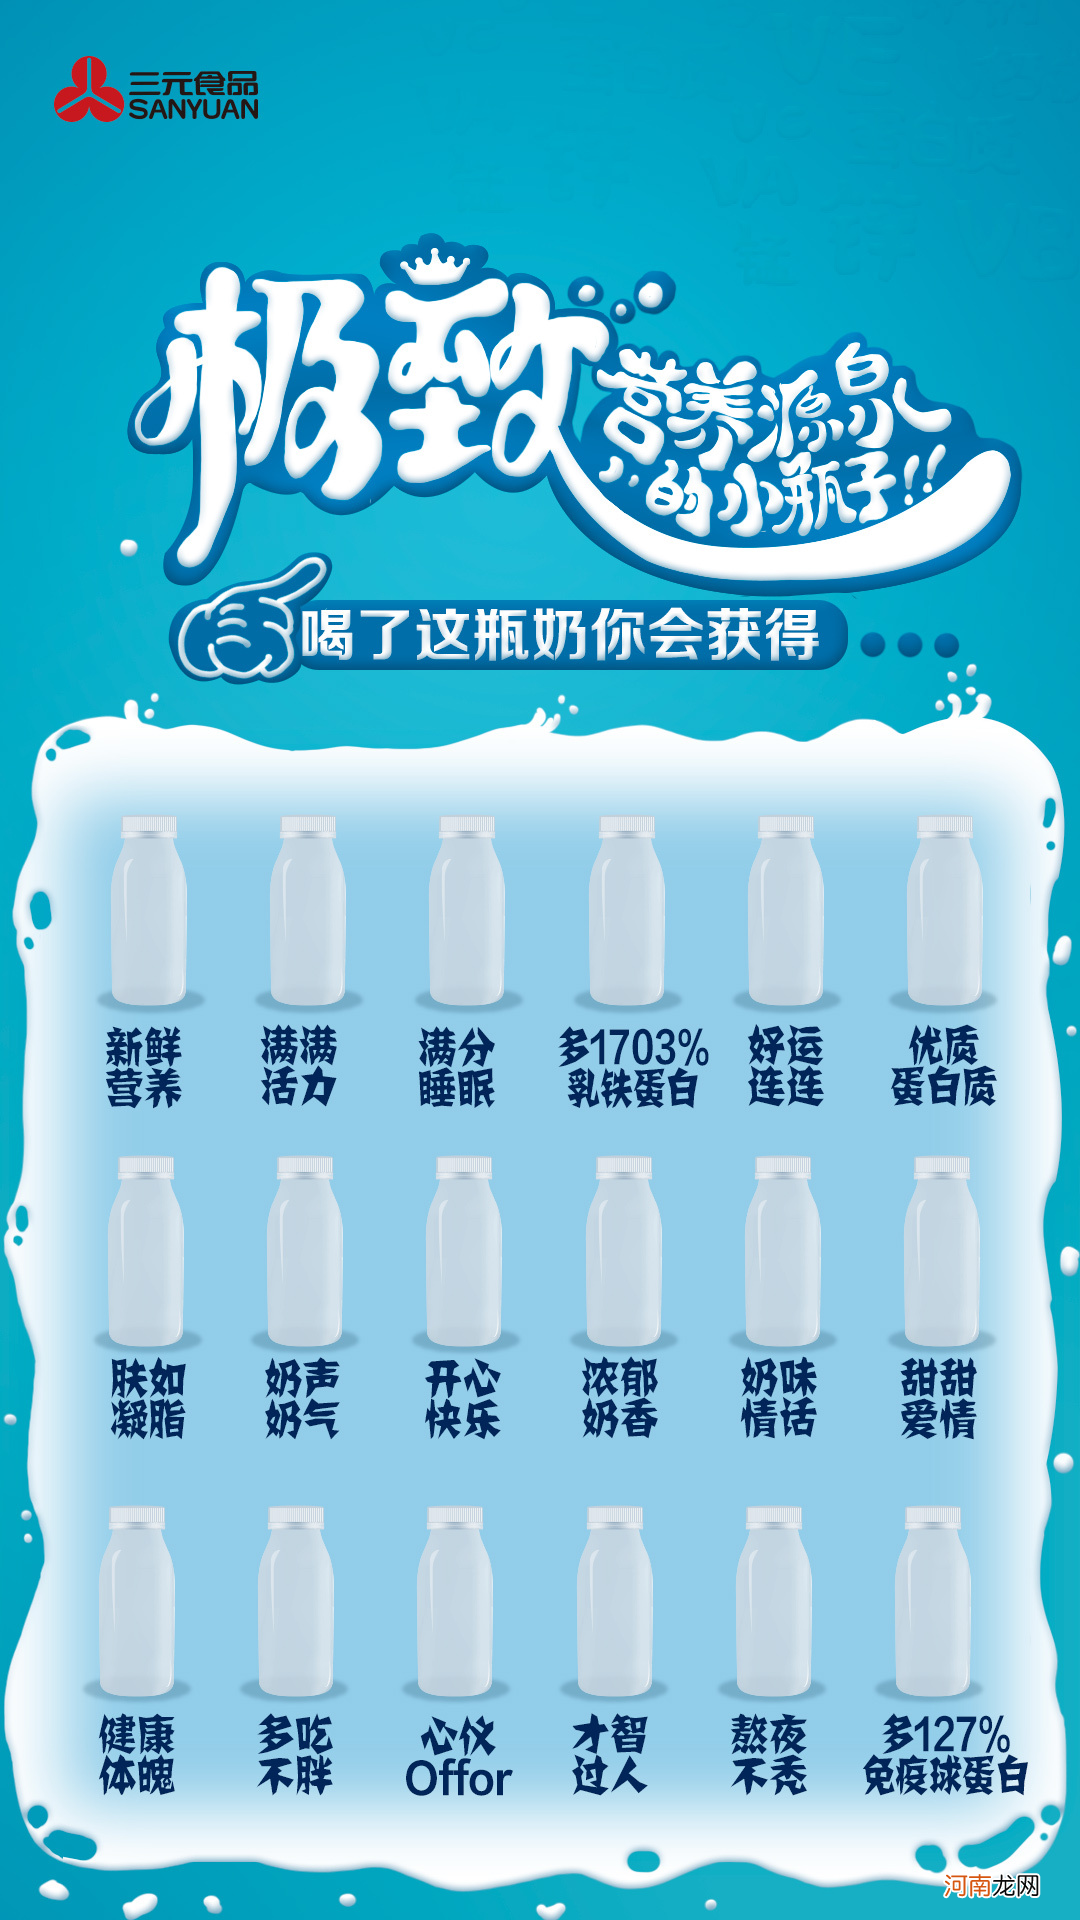 北京送上门三元牛奶质量怎么样 三元牛奶怎么样排名第几